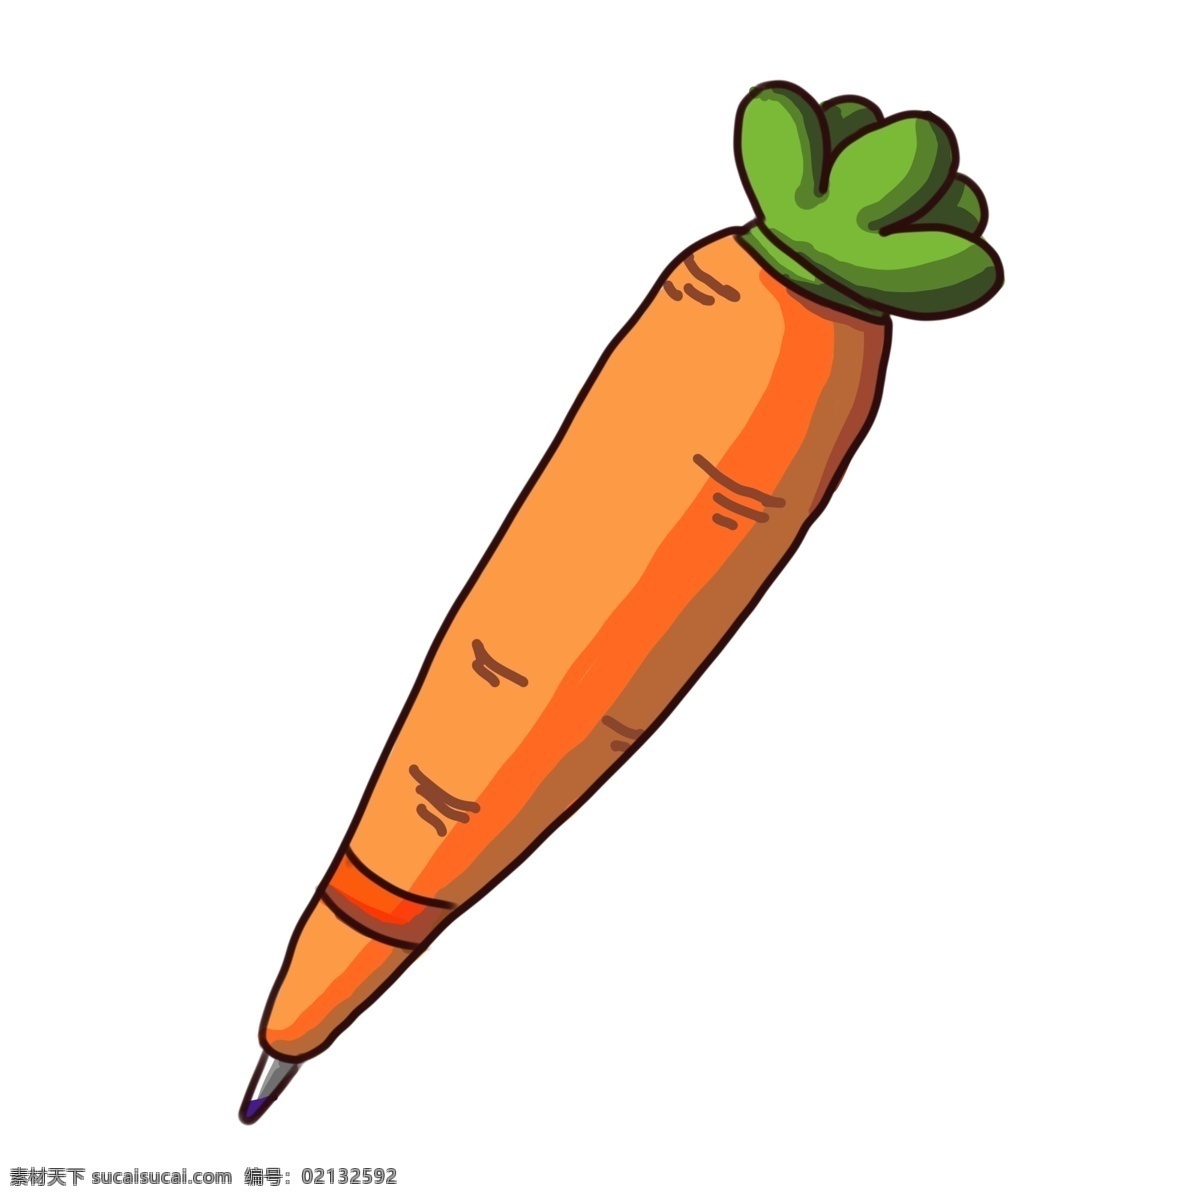 胡萝卜 笔 卡通 插画 胡萝卜用笔 卡通插画 写字用笔 笔的插画 文学用笔 学习文具 蔬菜的笔 萝卜